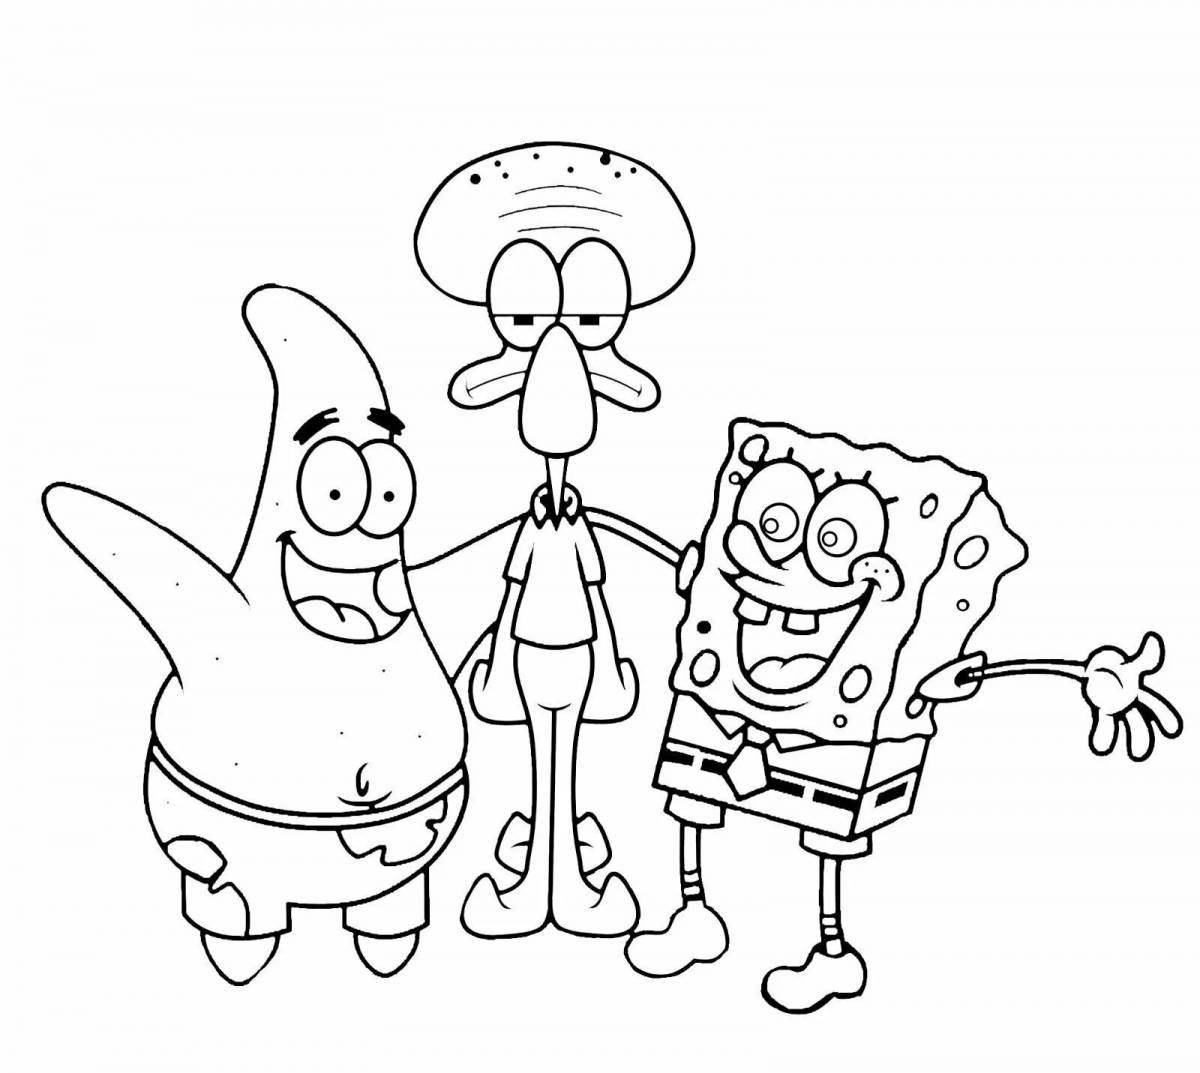 Glorious coloring spongebob heroes